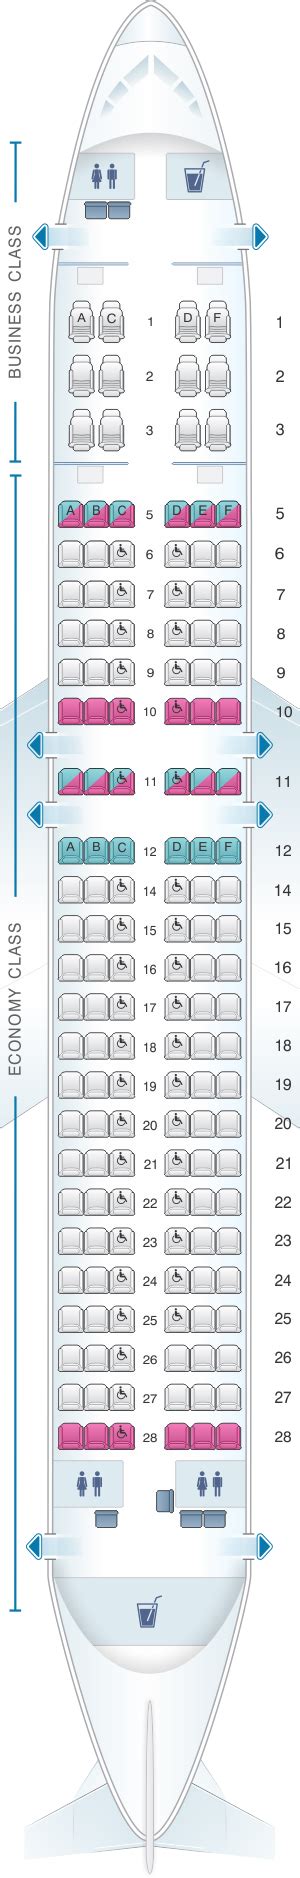 Airbus Seating Configuration